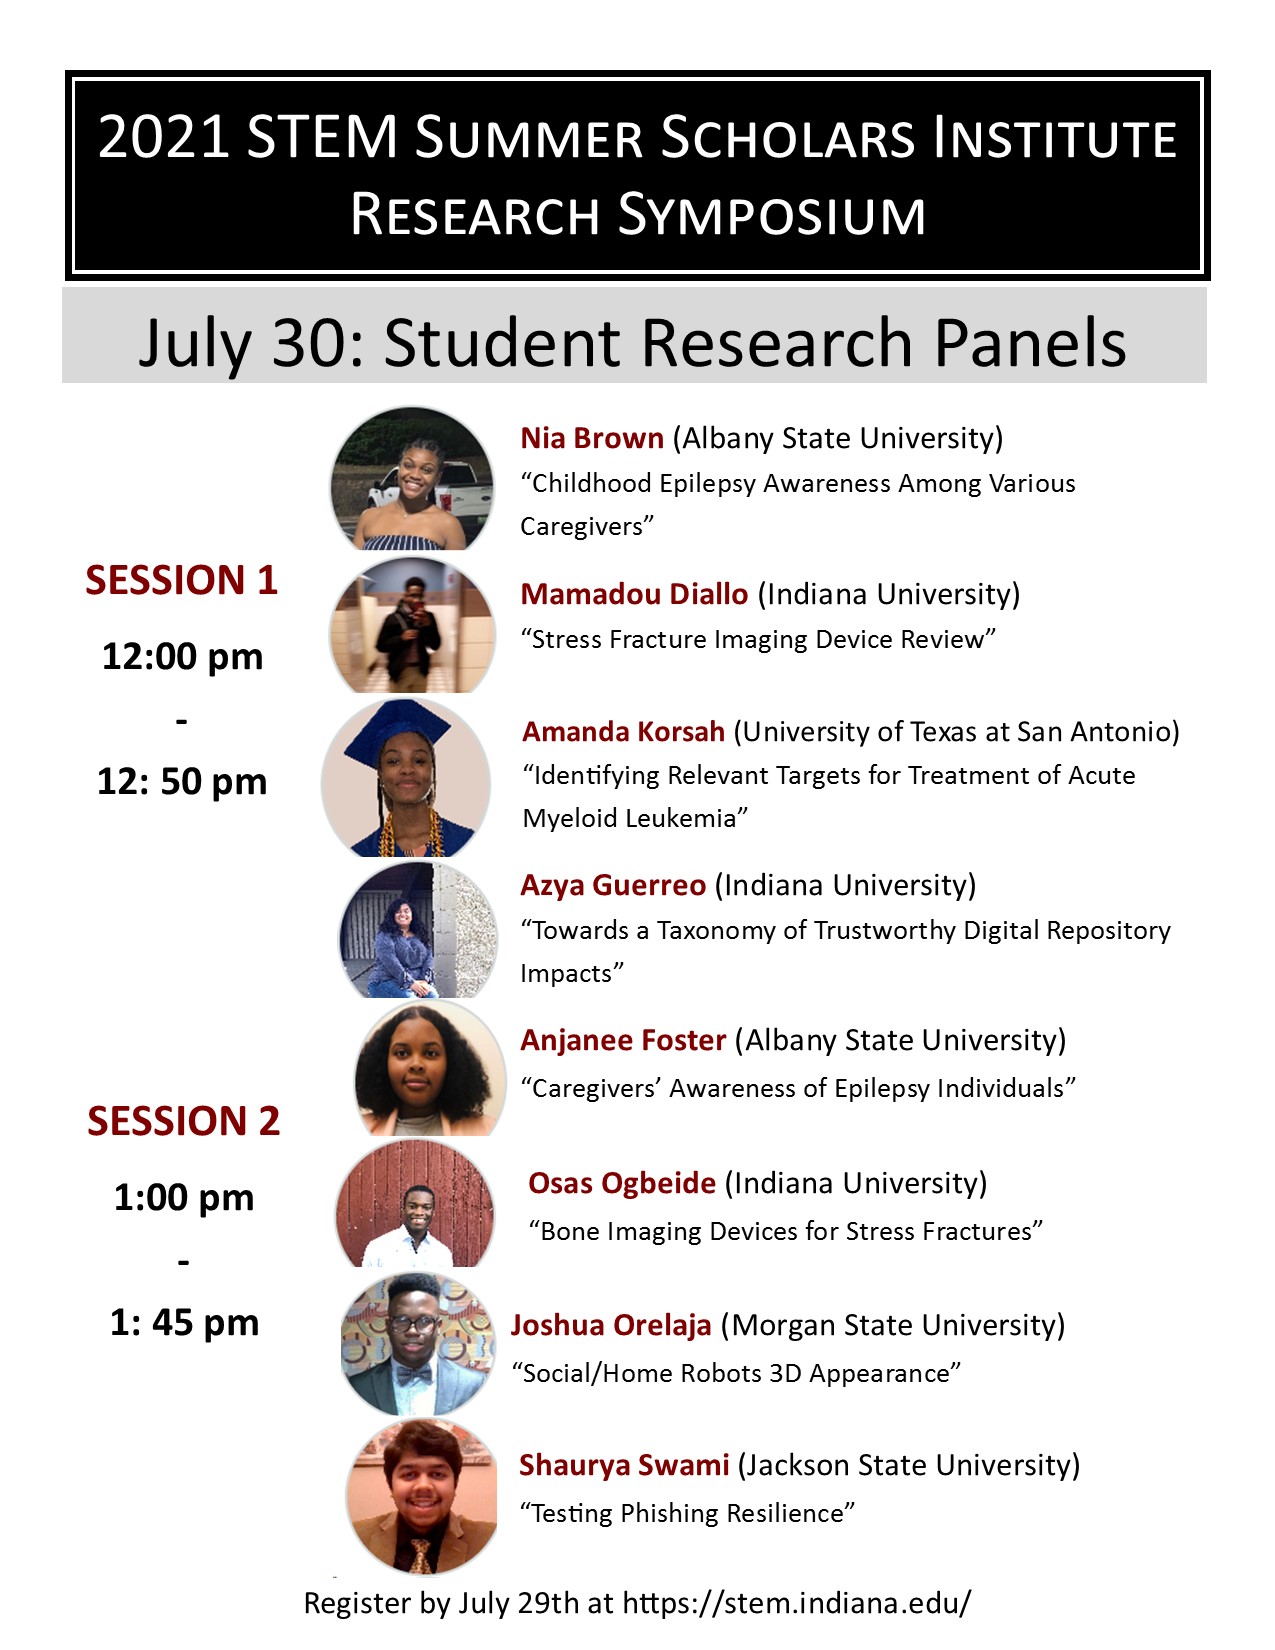 2021-stem-ssi-research-symposium-invitation.jpg